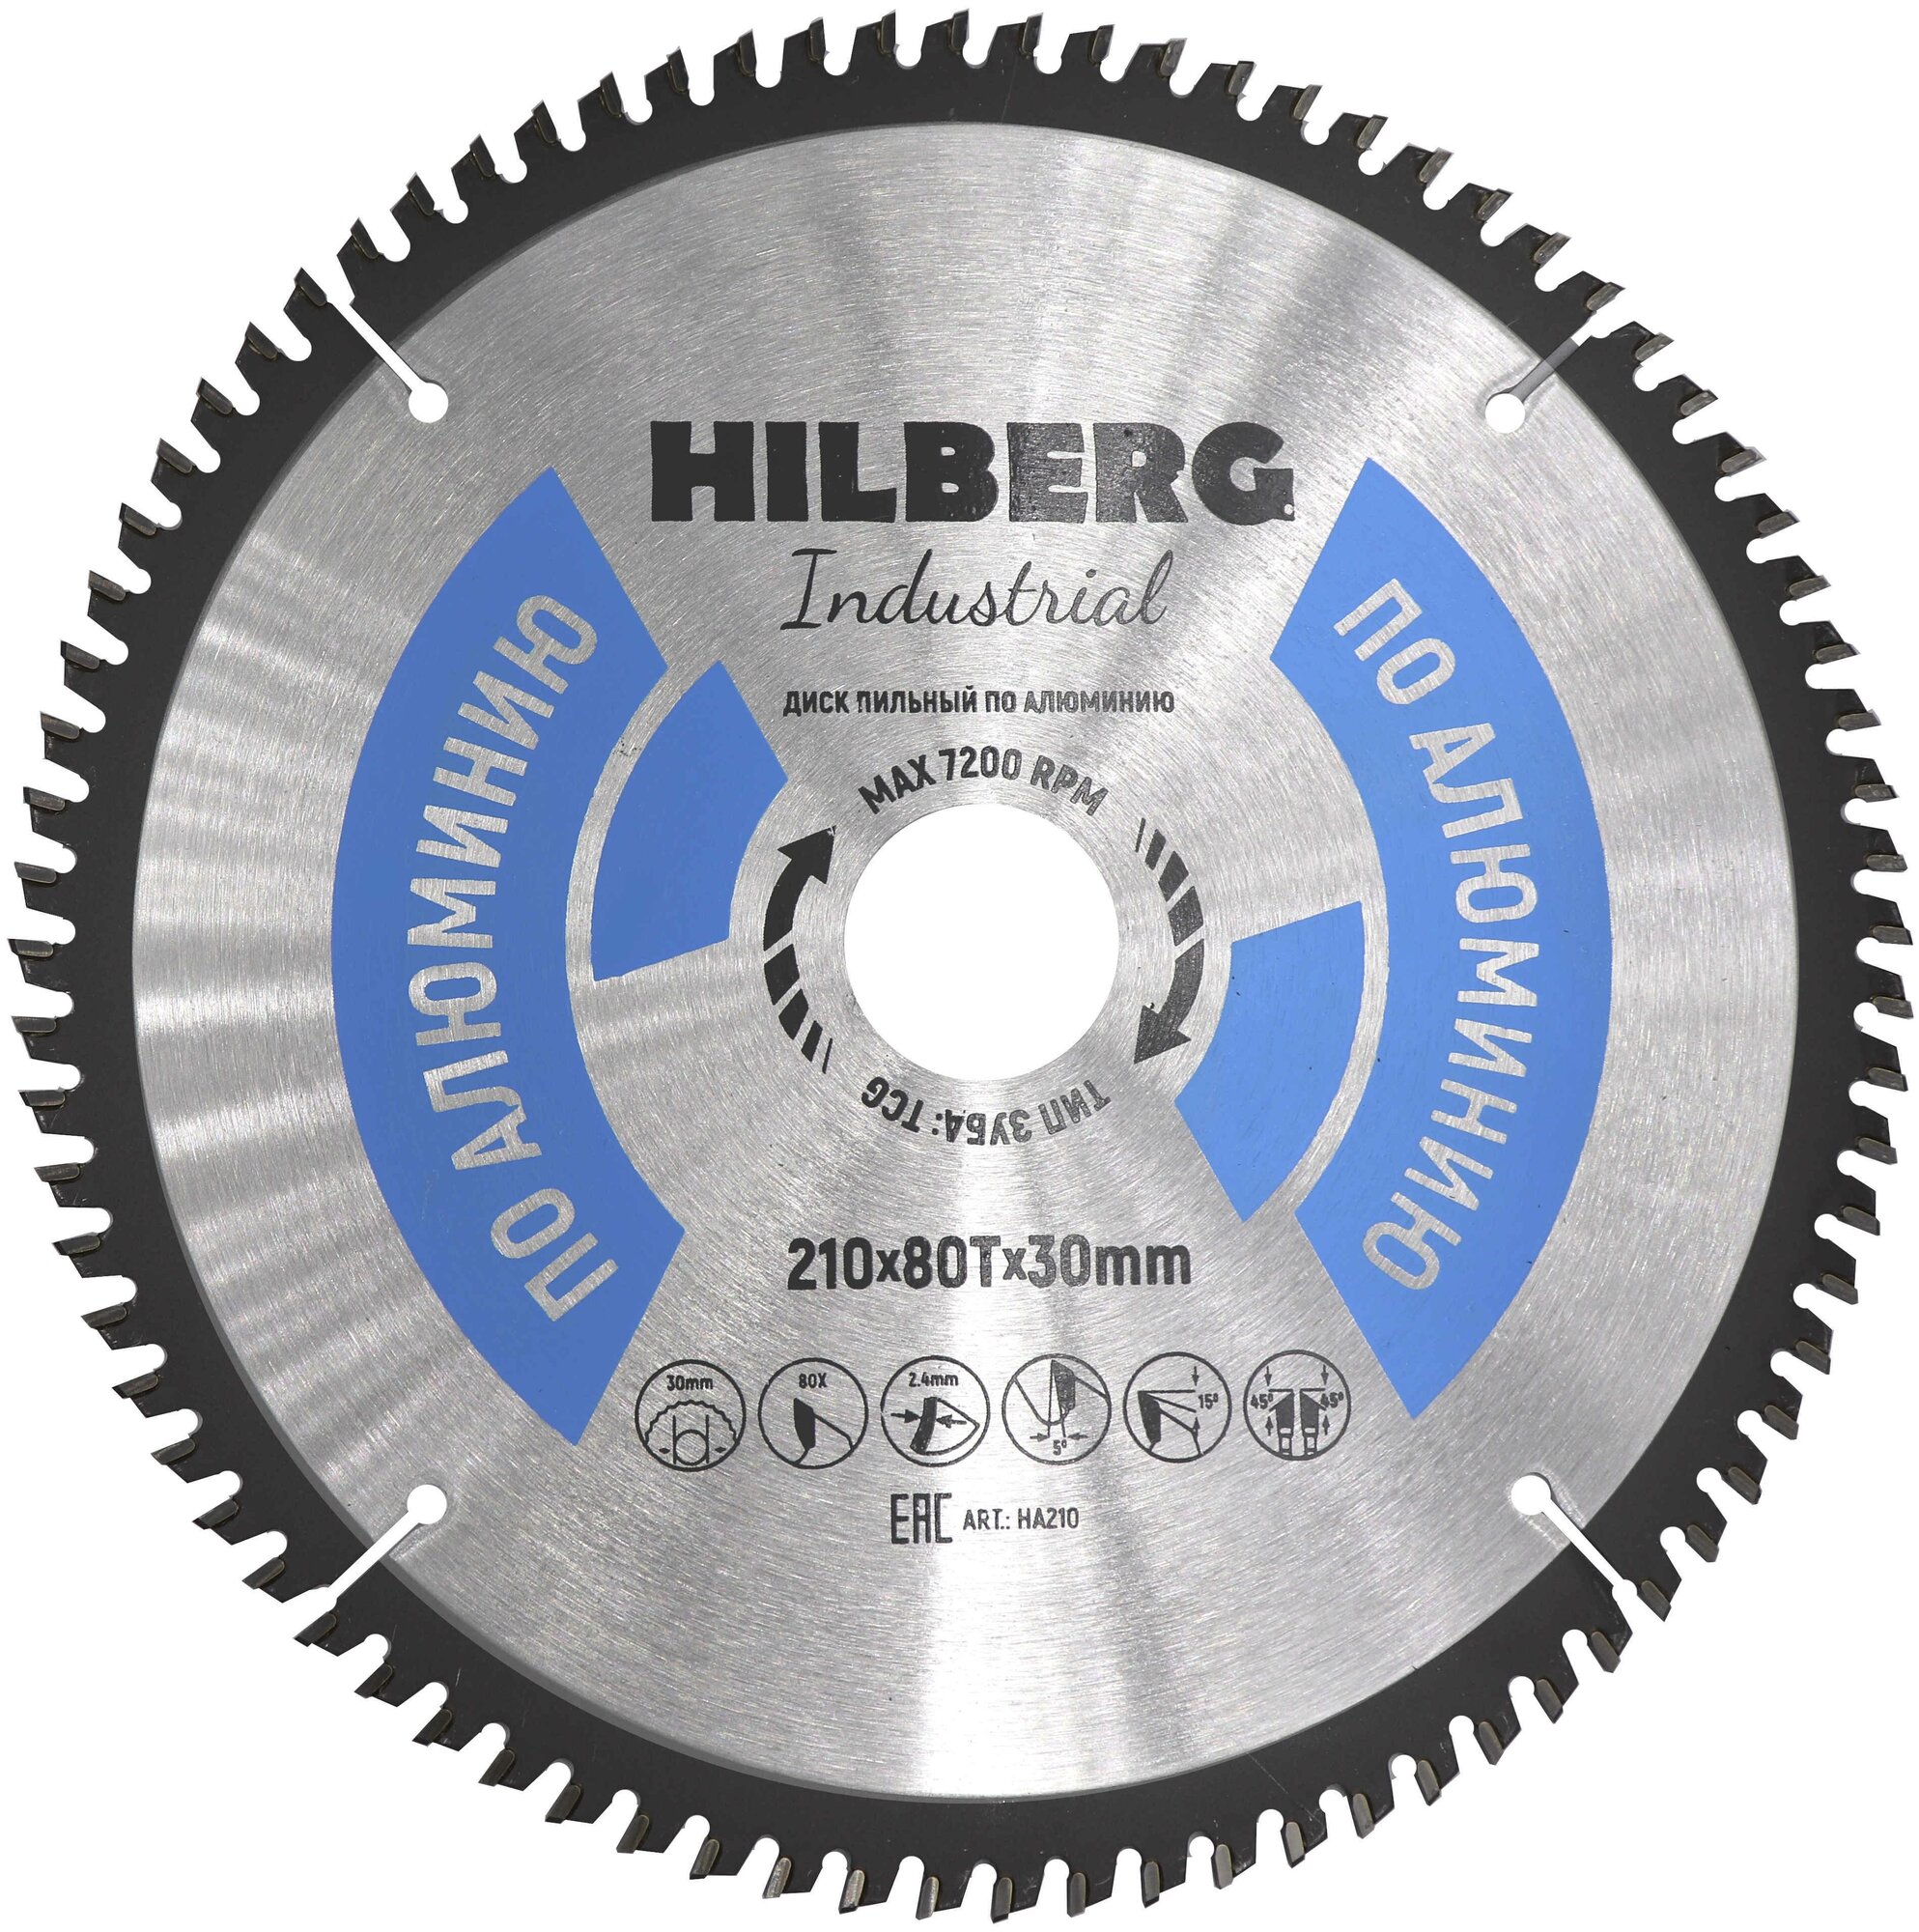 Диск Hilberg Industrial HA210 пильный по алюминию 210x30mm 80 зубьев